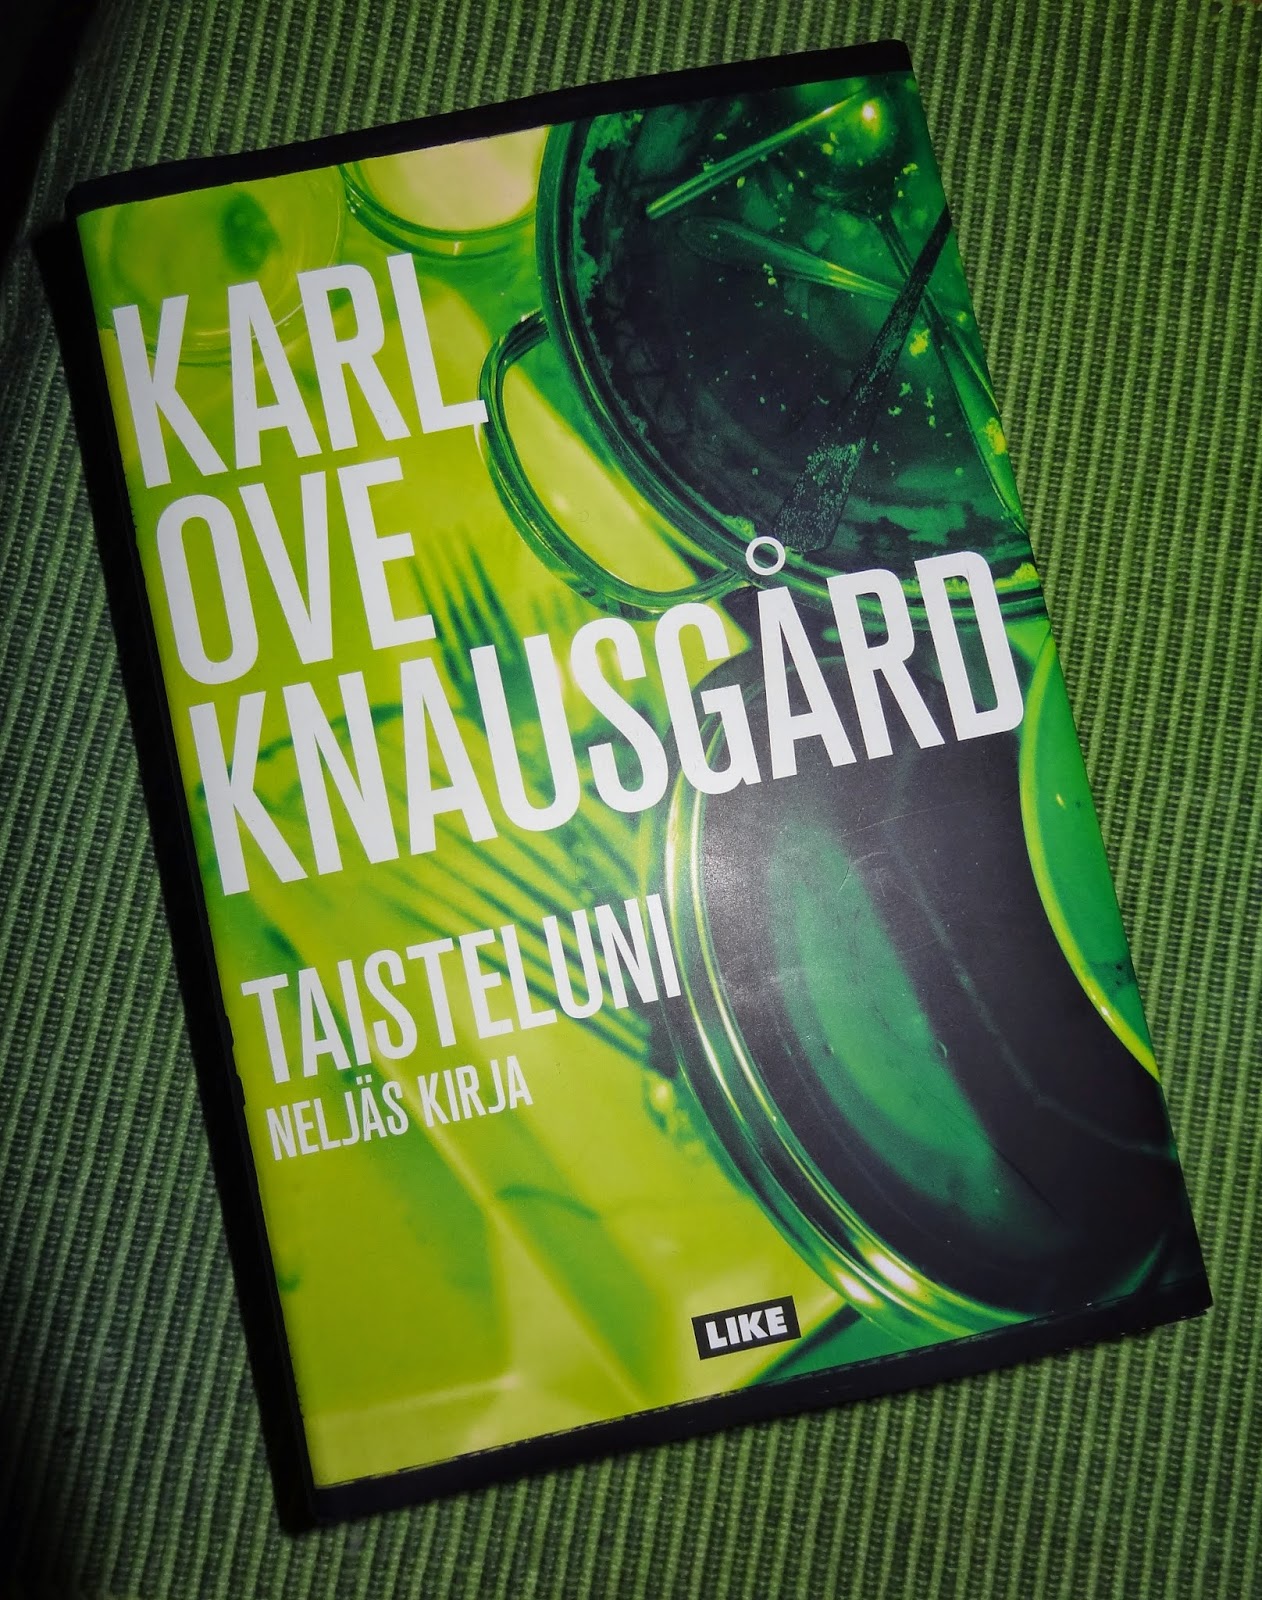 1001 kirjaa ja yksi pieni elämä: Karl Ove Knausgård: Taisteluni (viides  kirja)